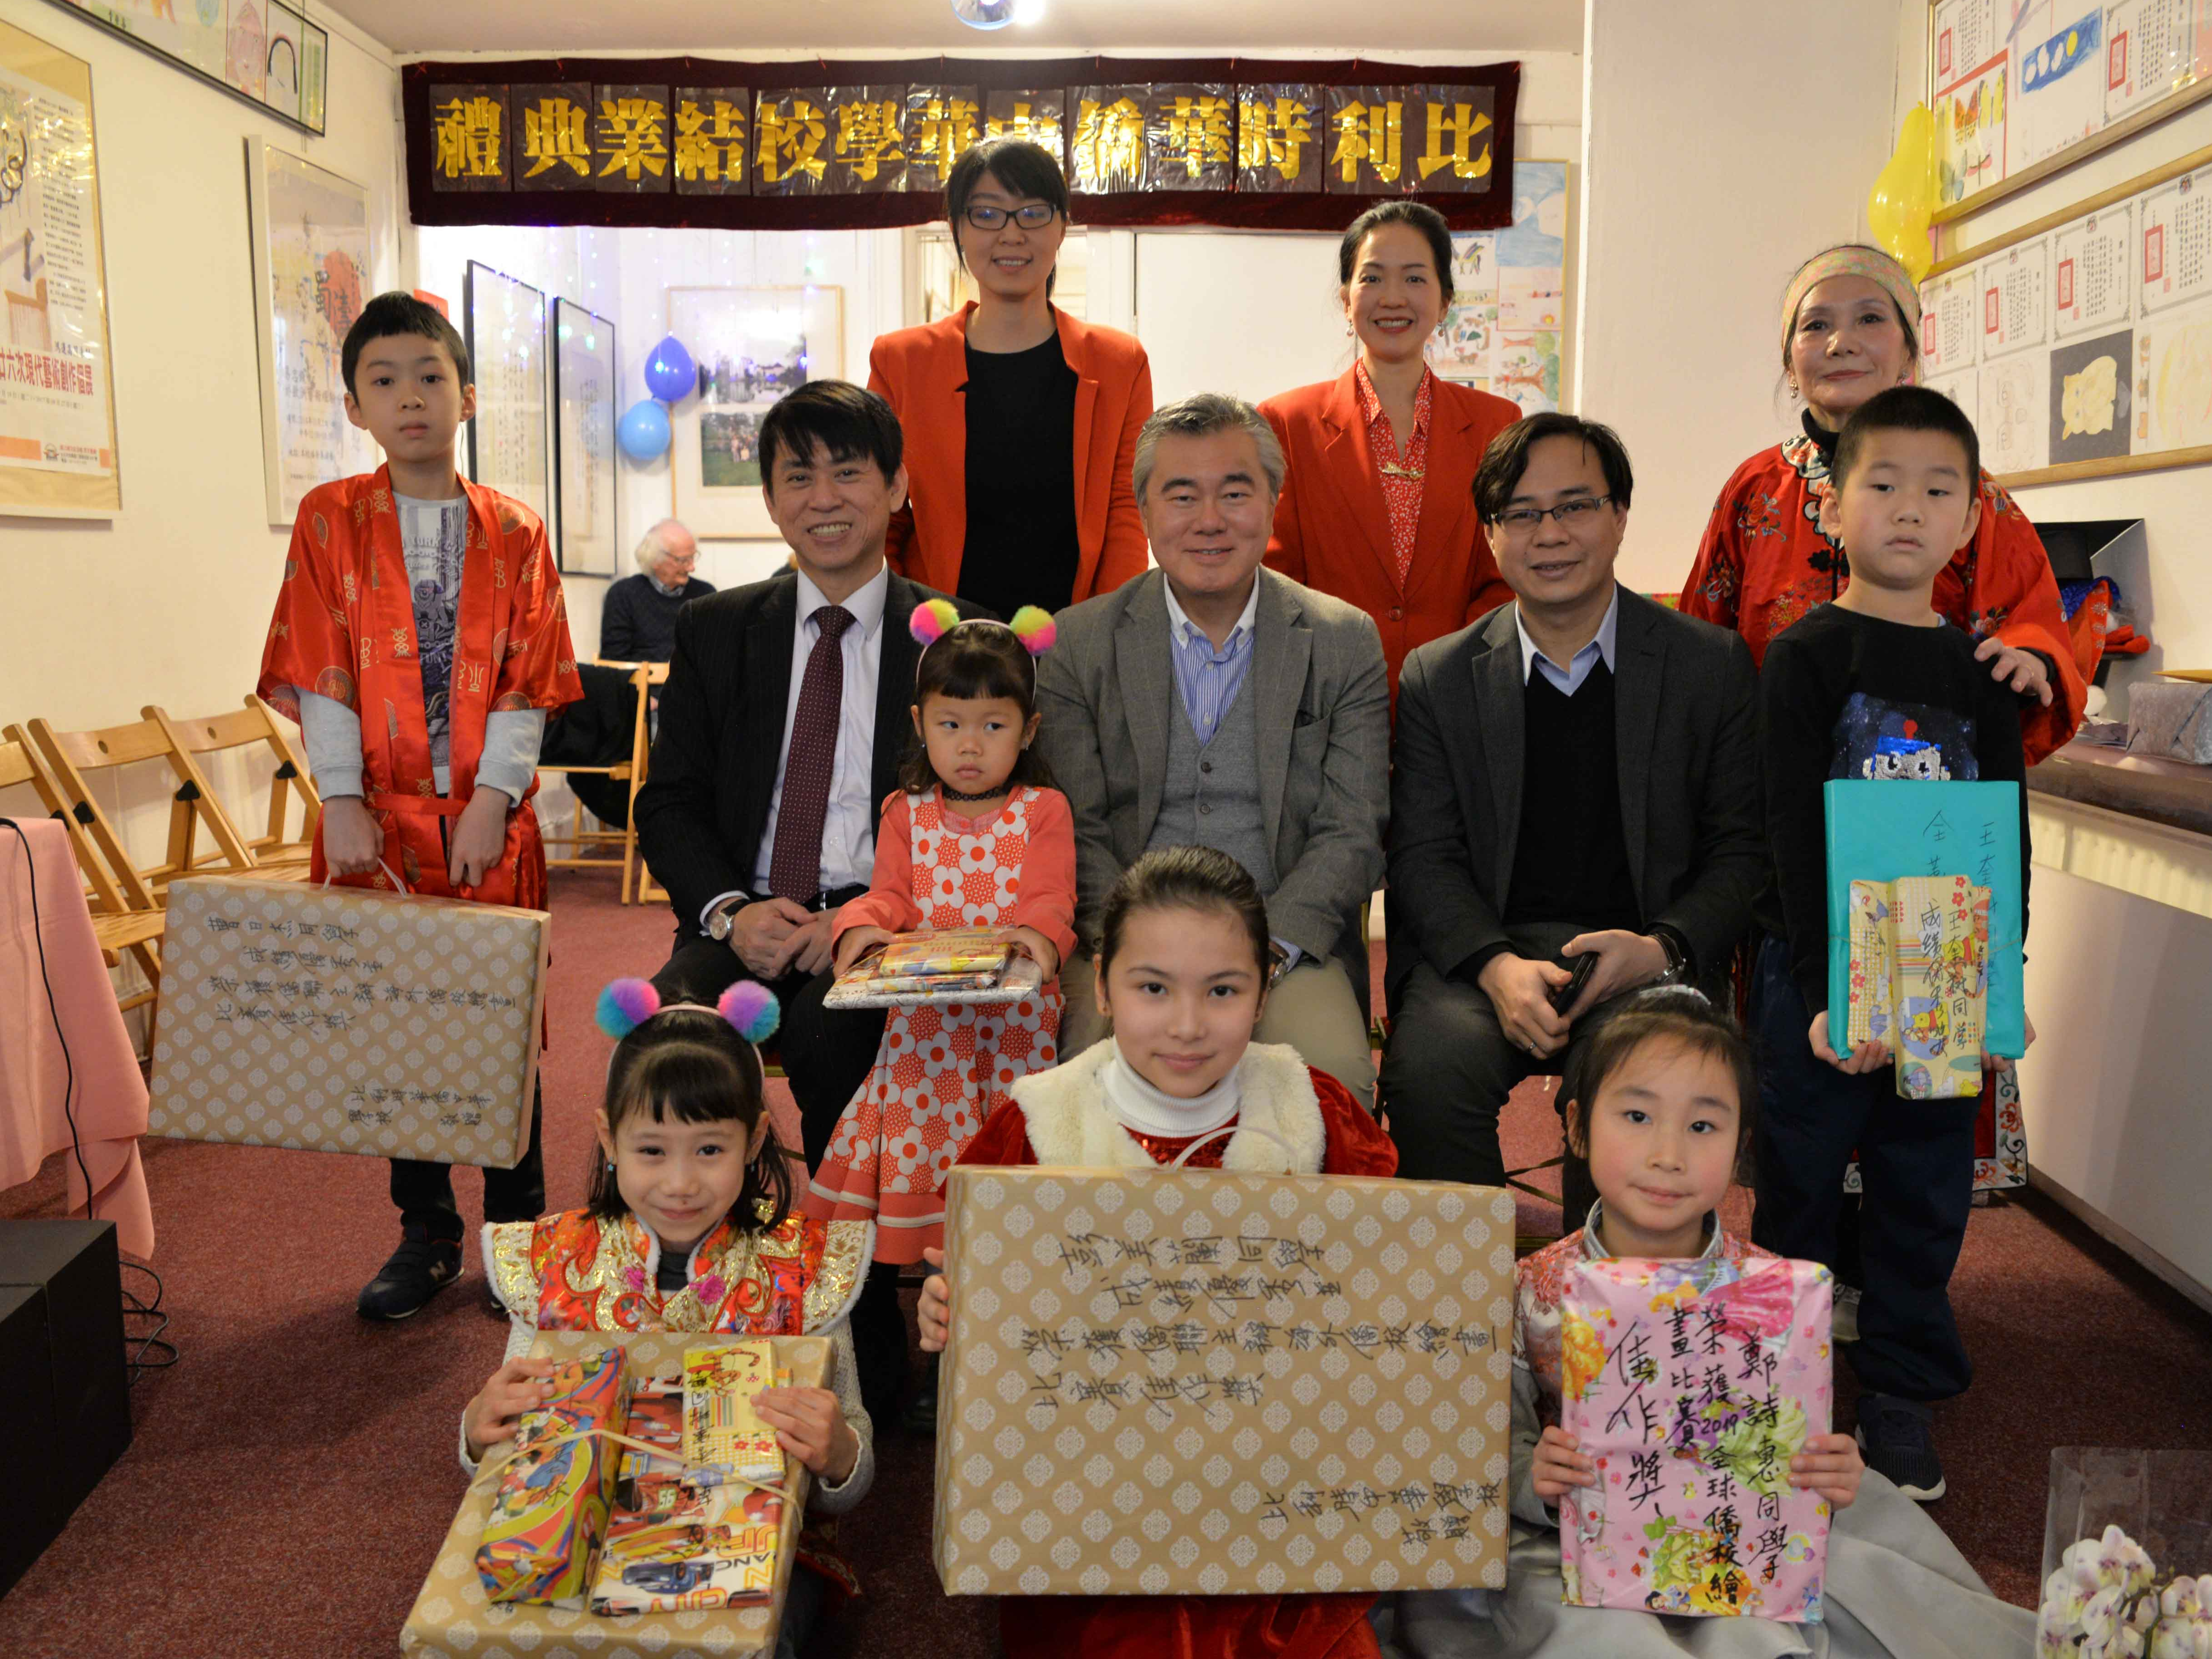 比利時華僑中華學校暨余易書院   2020 周年慶暨頒獎典禮圖片